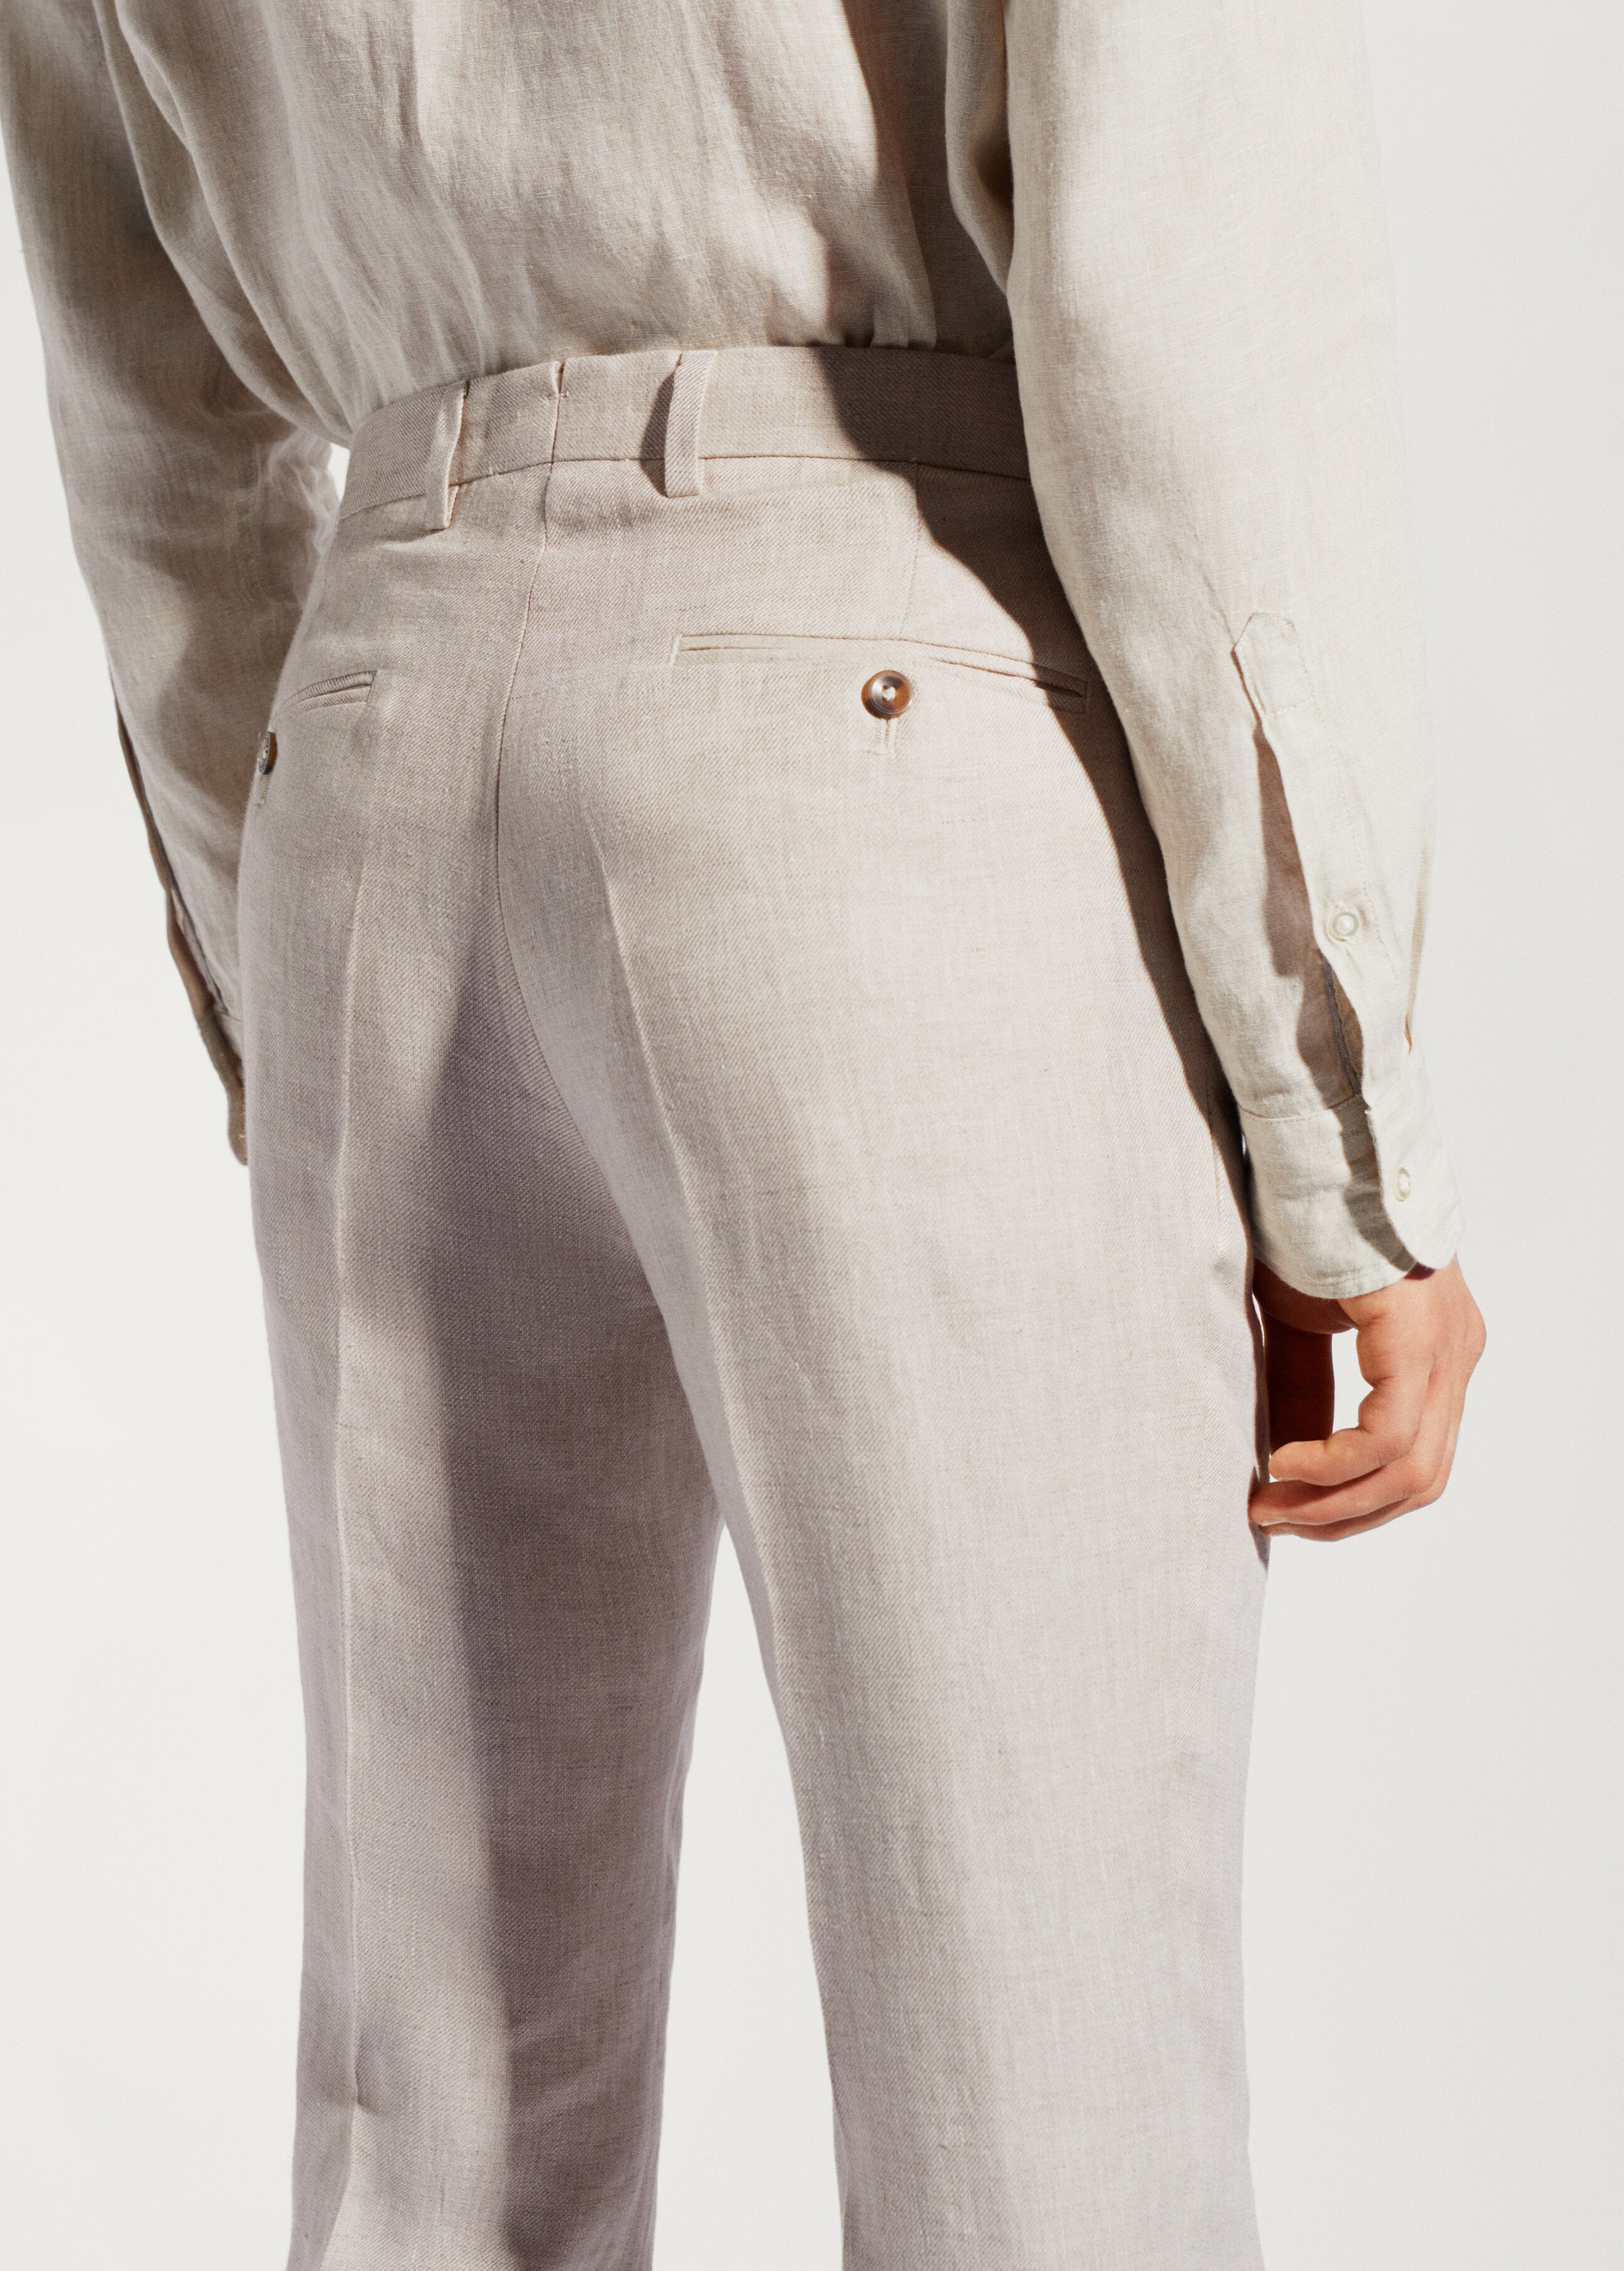 Pantalón traje 100% lino - Detalle del artículo 2